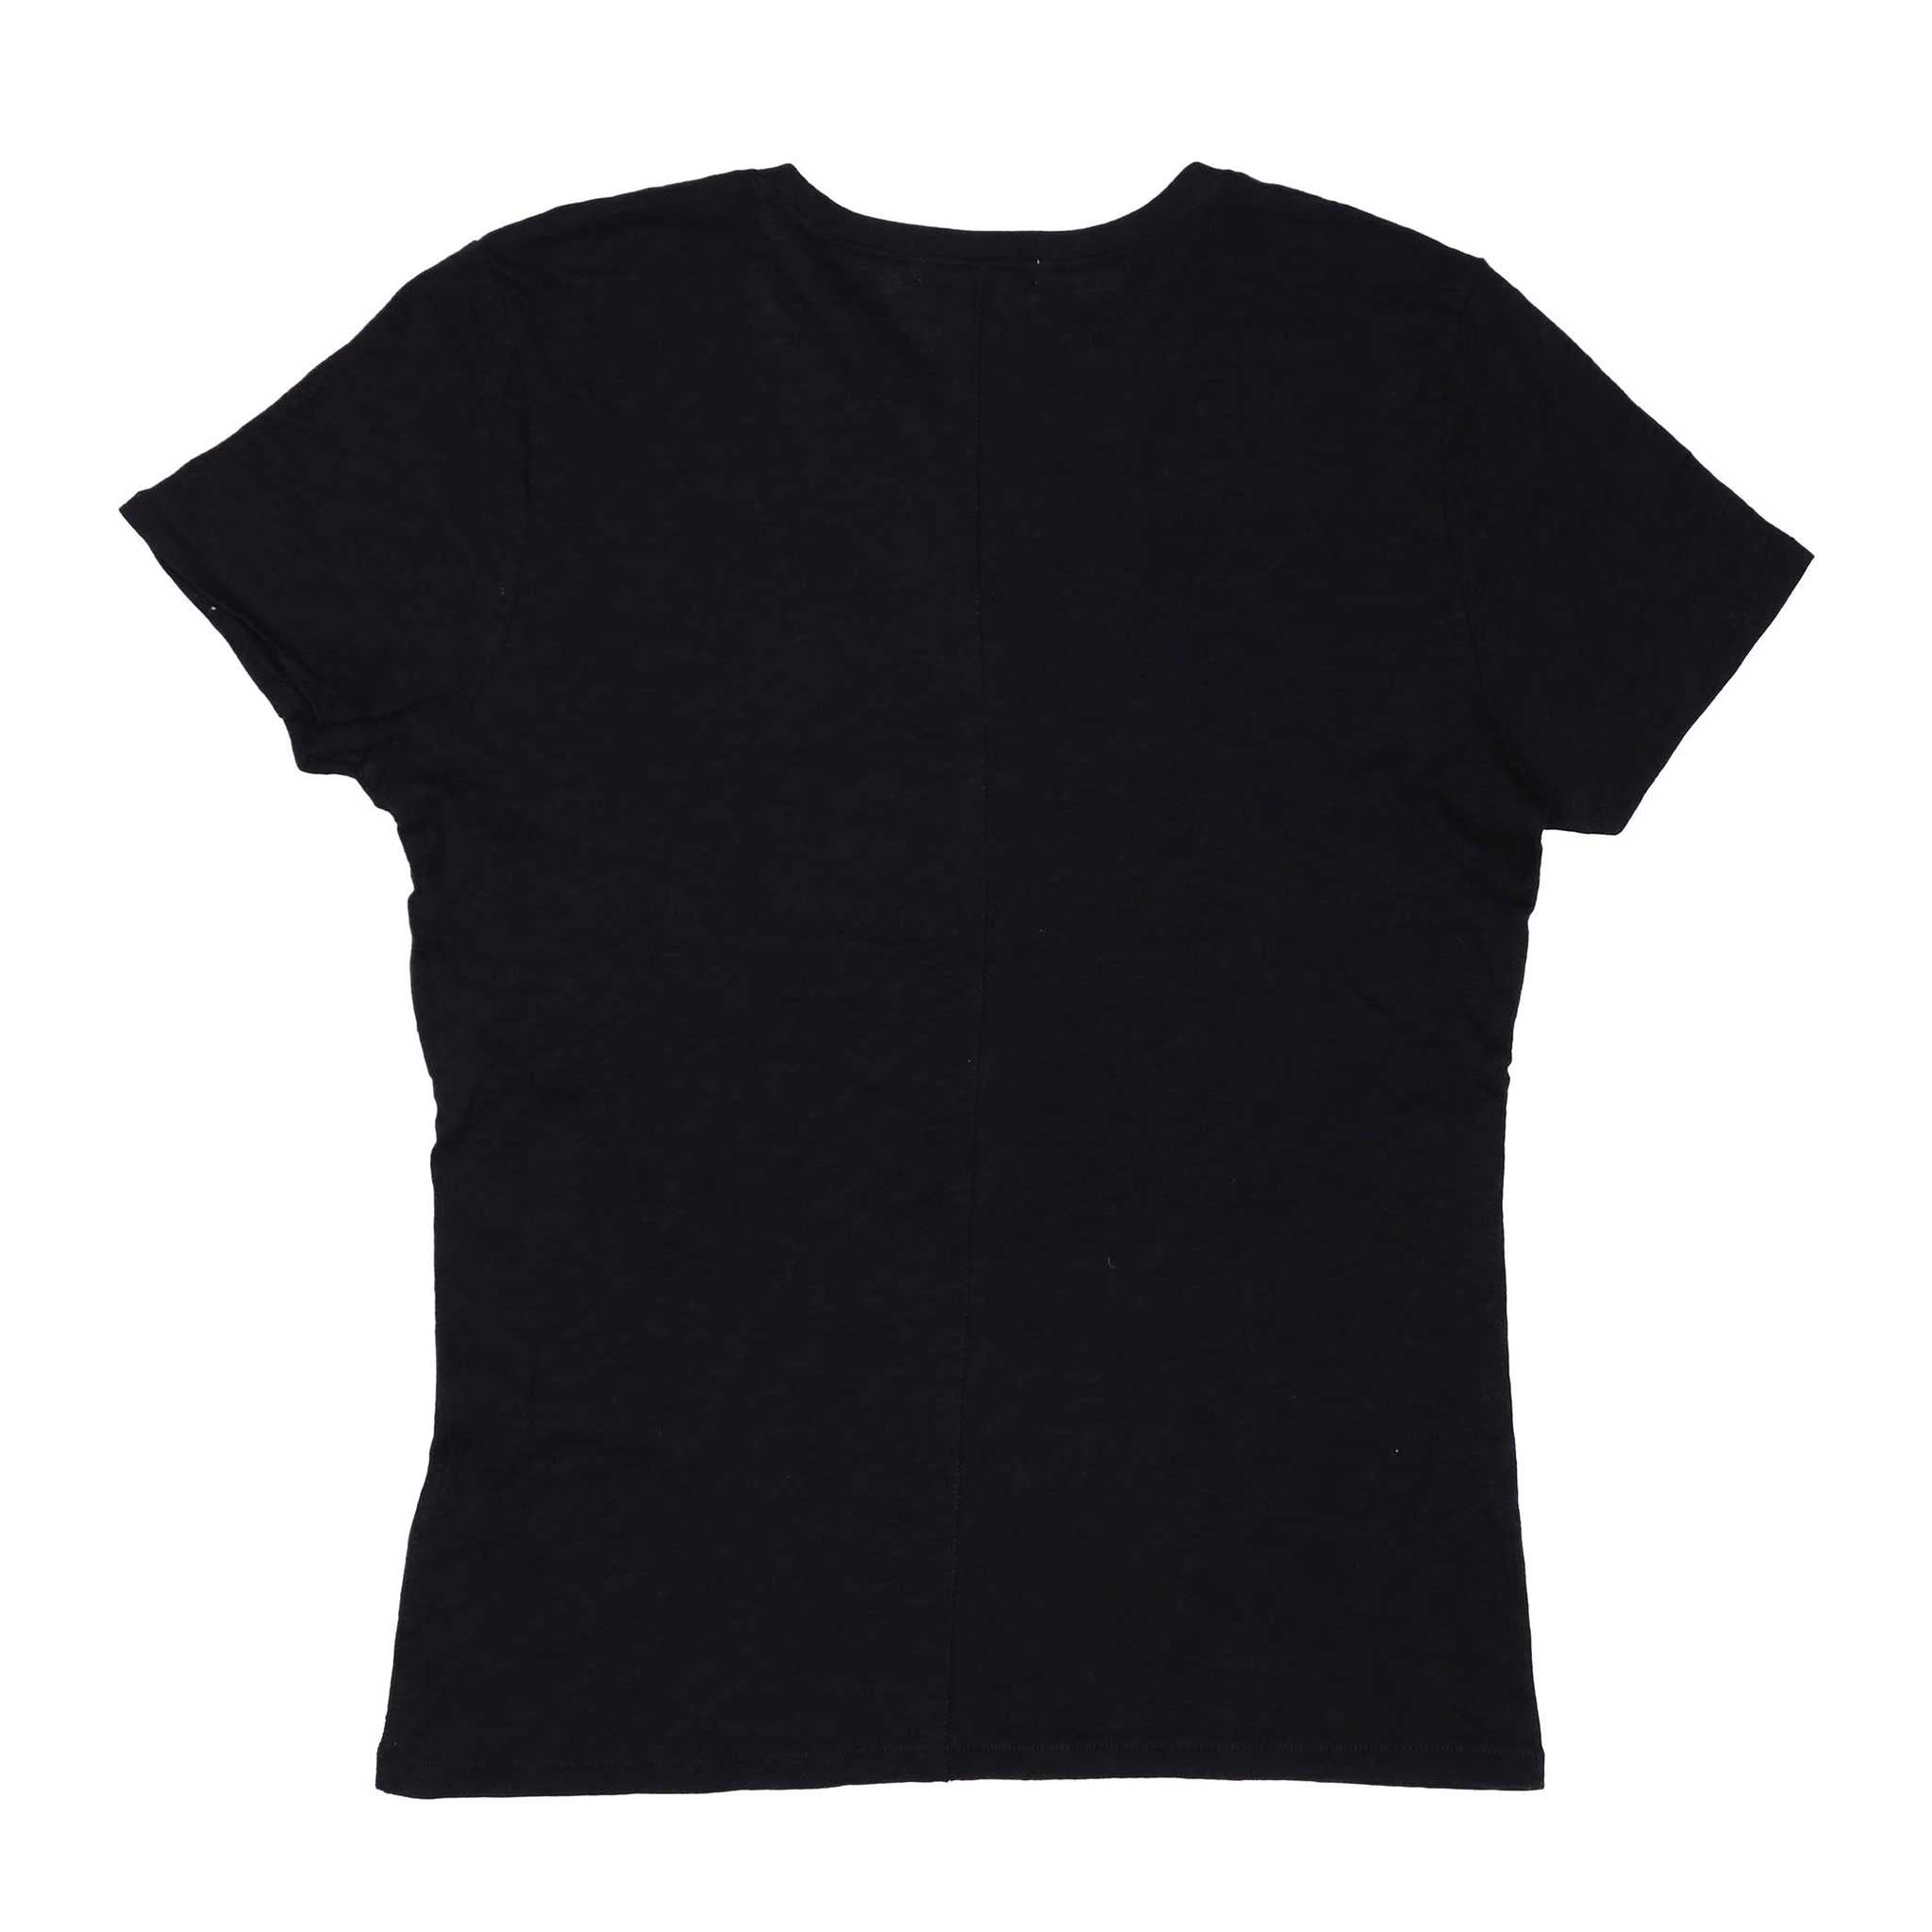 Portland Trail Blazers 47 Brand Women's Bitsy V-Neck T-Shirt